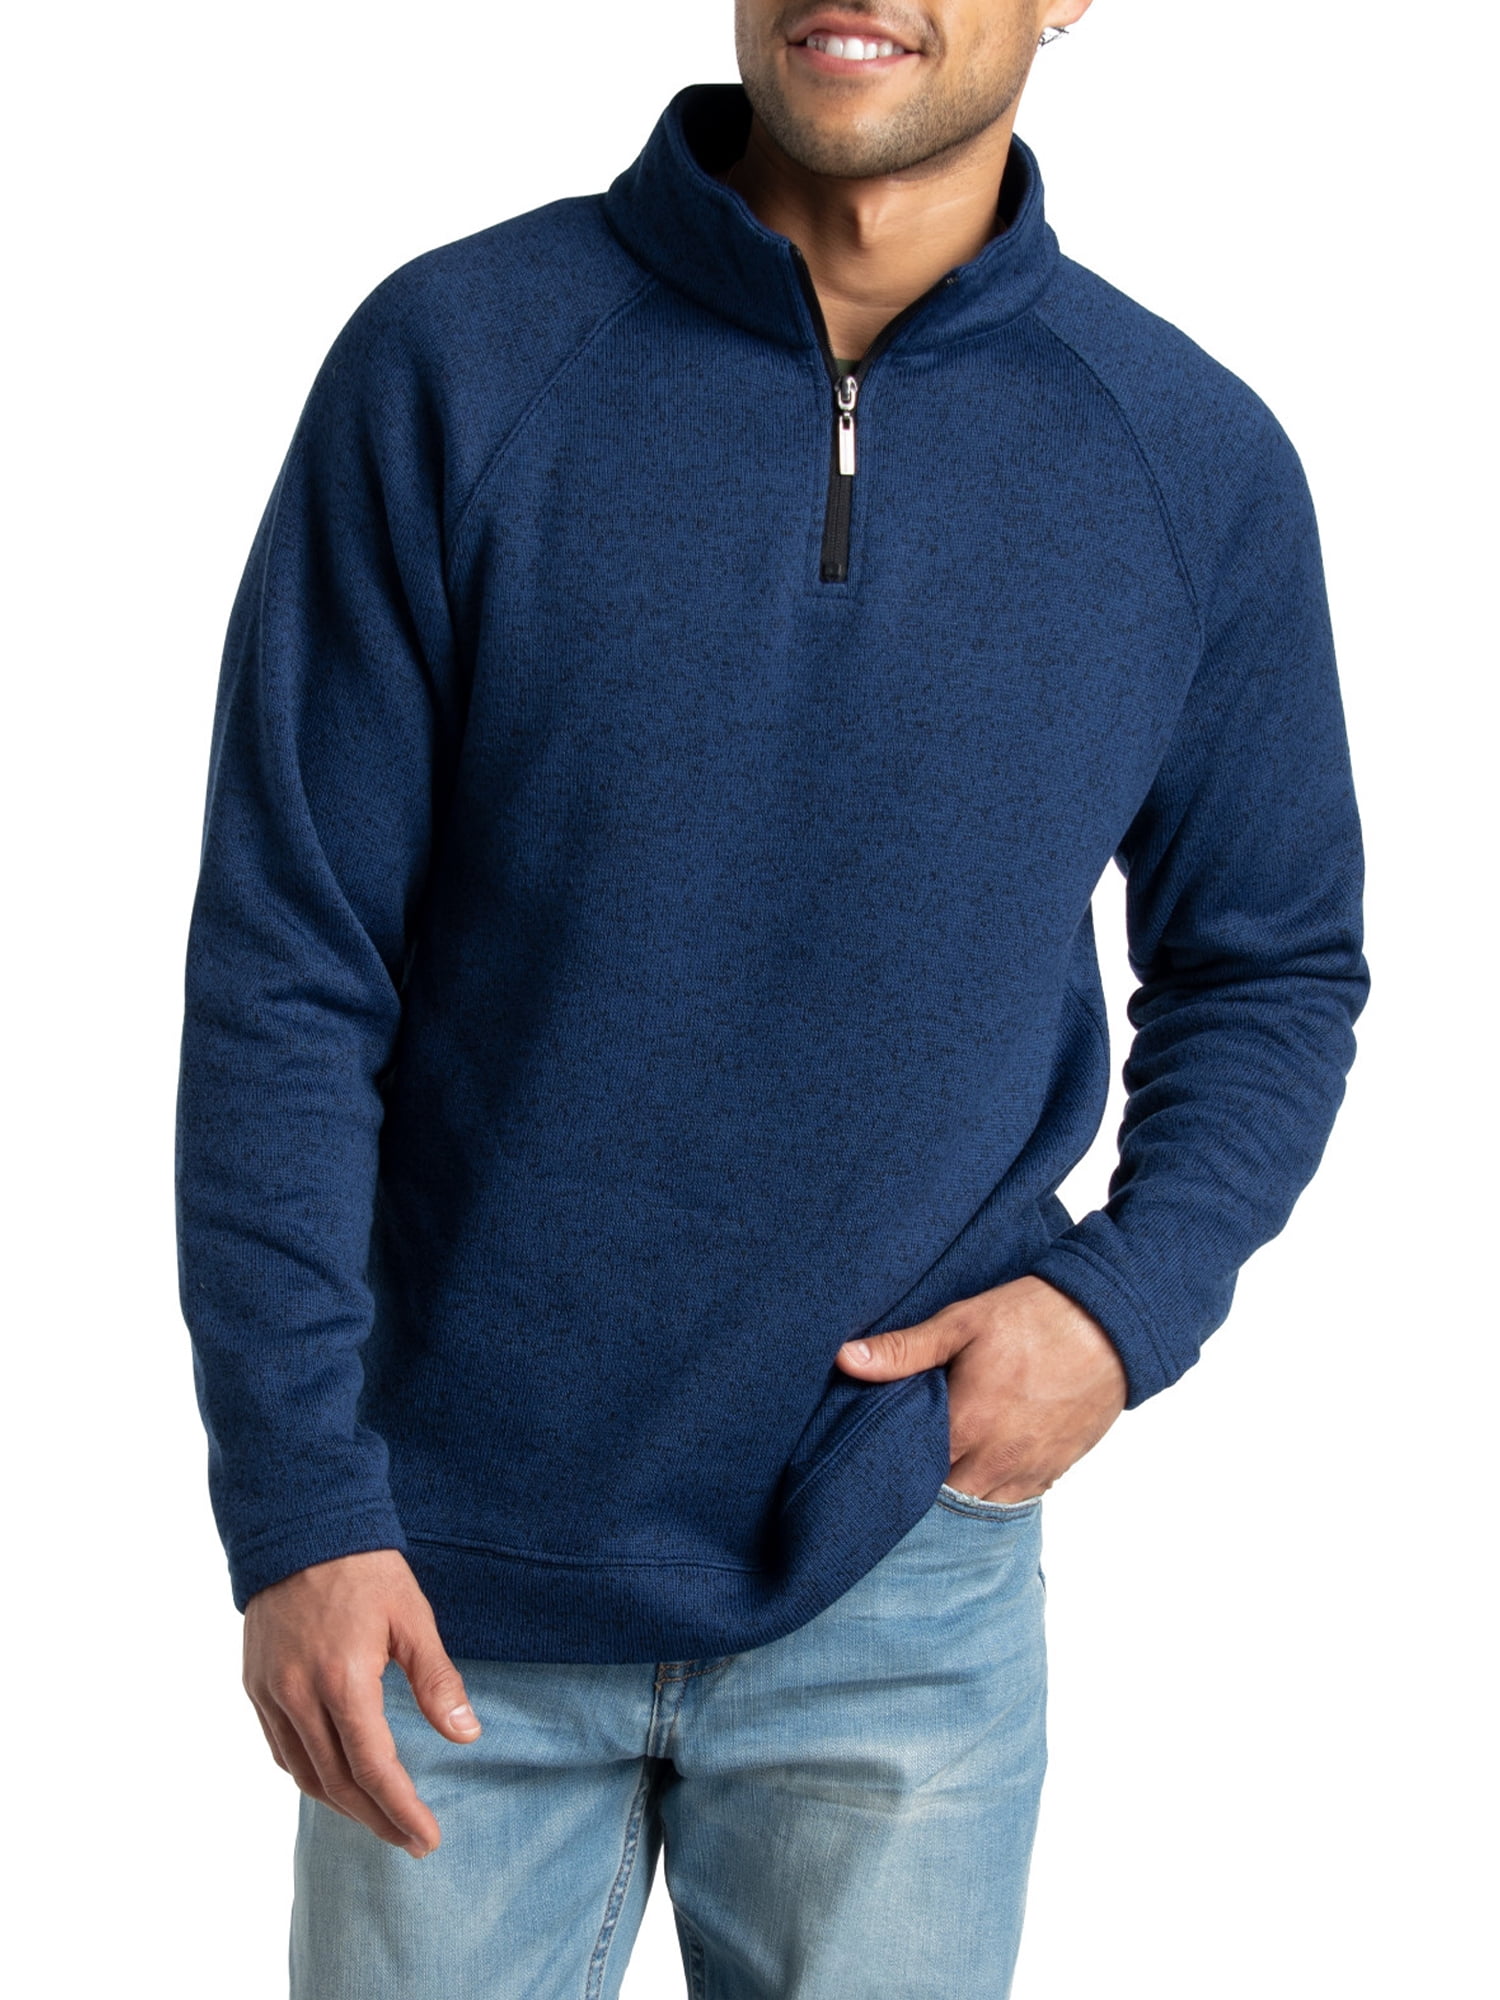 Fruit of the Loom Men's Sweater Fleece Quarter Zip Pullover - Walmart.com